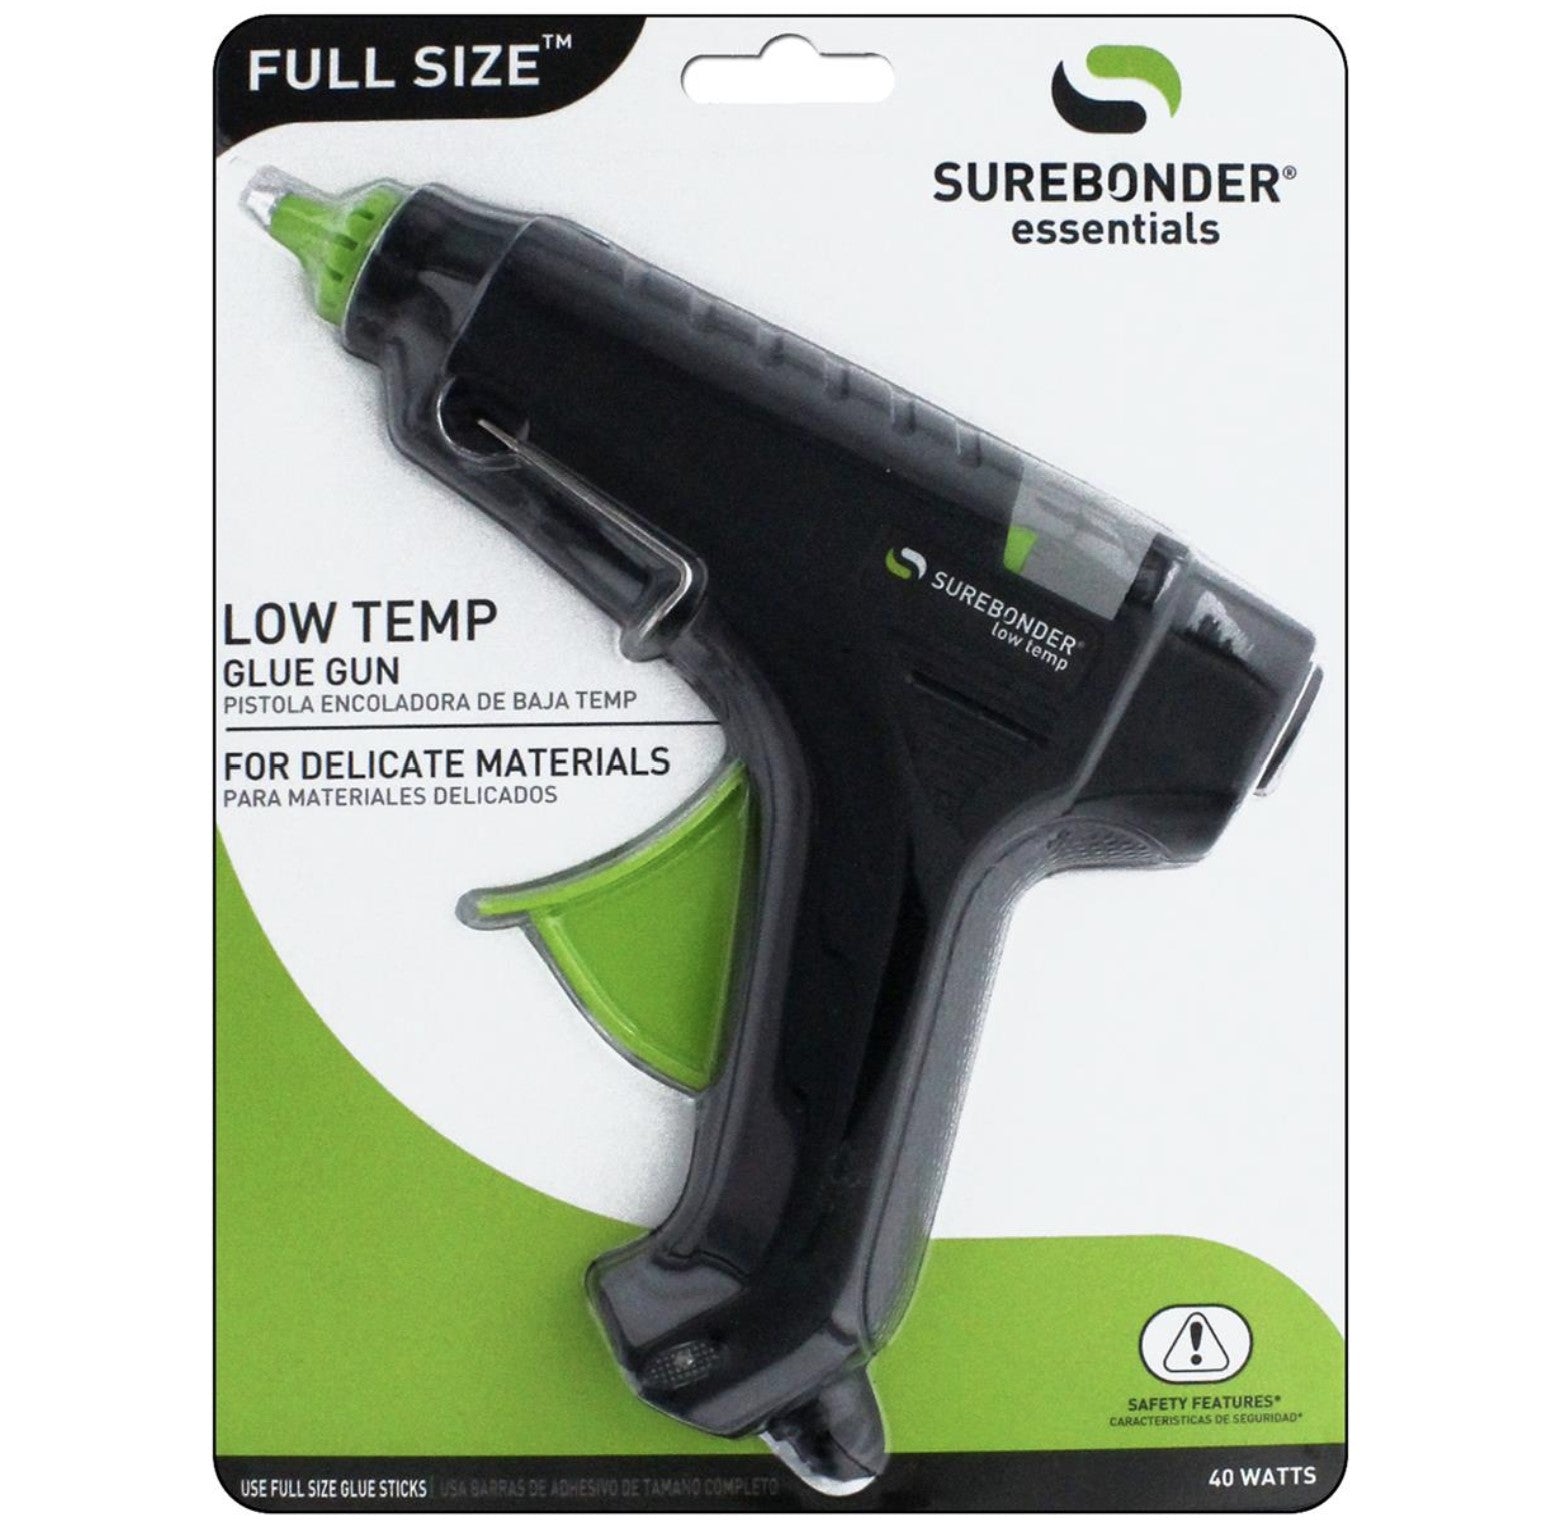 Full Size Low Temp Glue Gun, 40 Watt (Ref. L-270), Essentials Series by Surebonder®